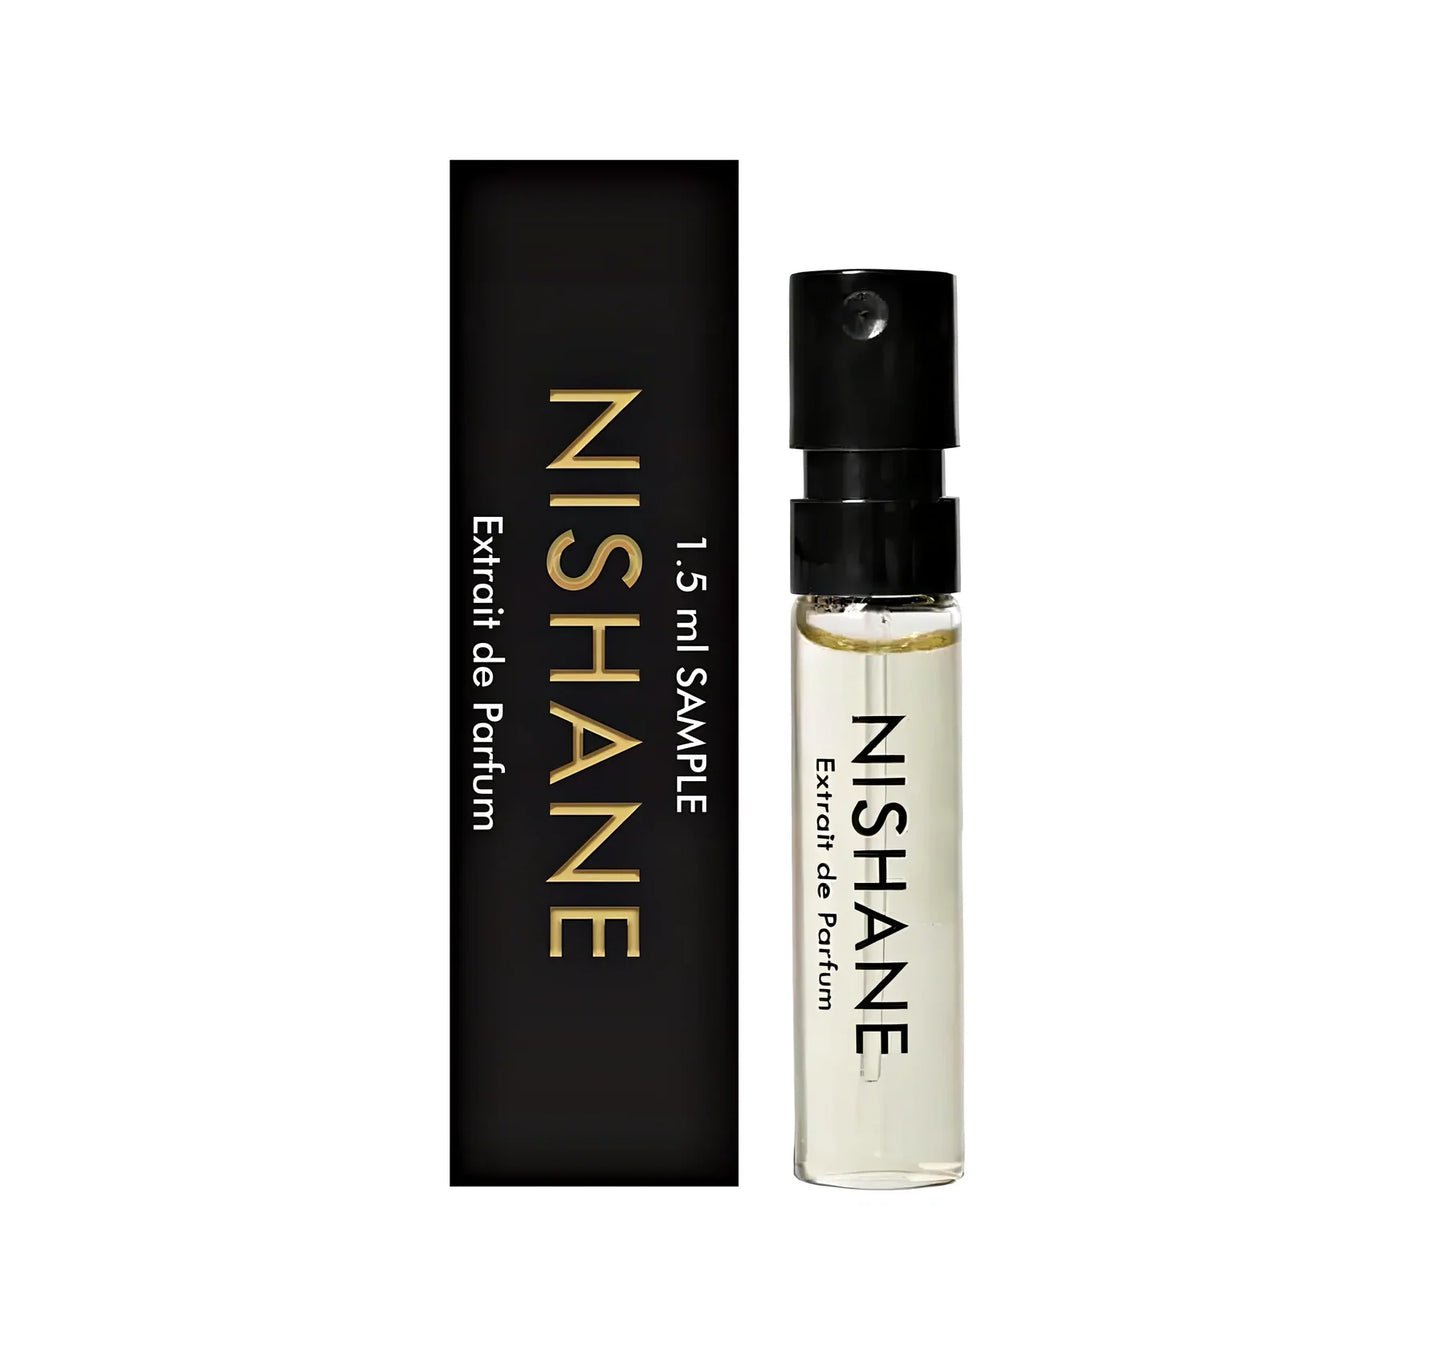 HACIVAT OUD Nishane Prestige Collection Extrait de Parfum Sample 2ml